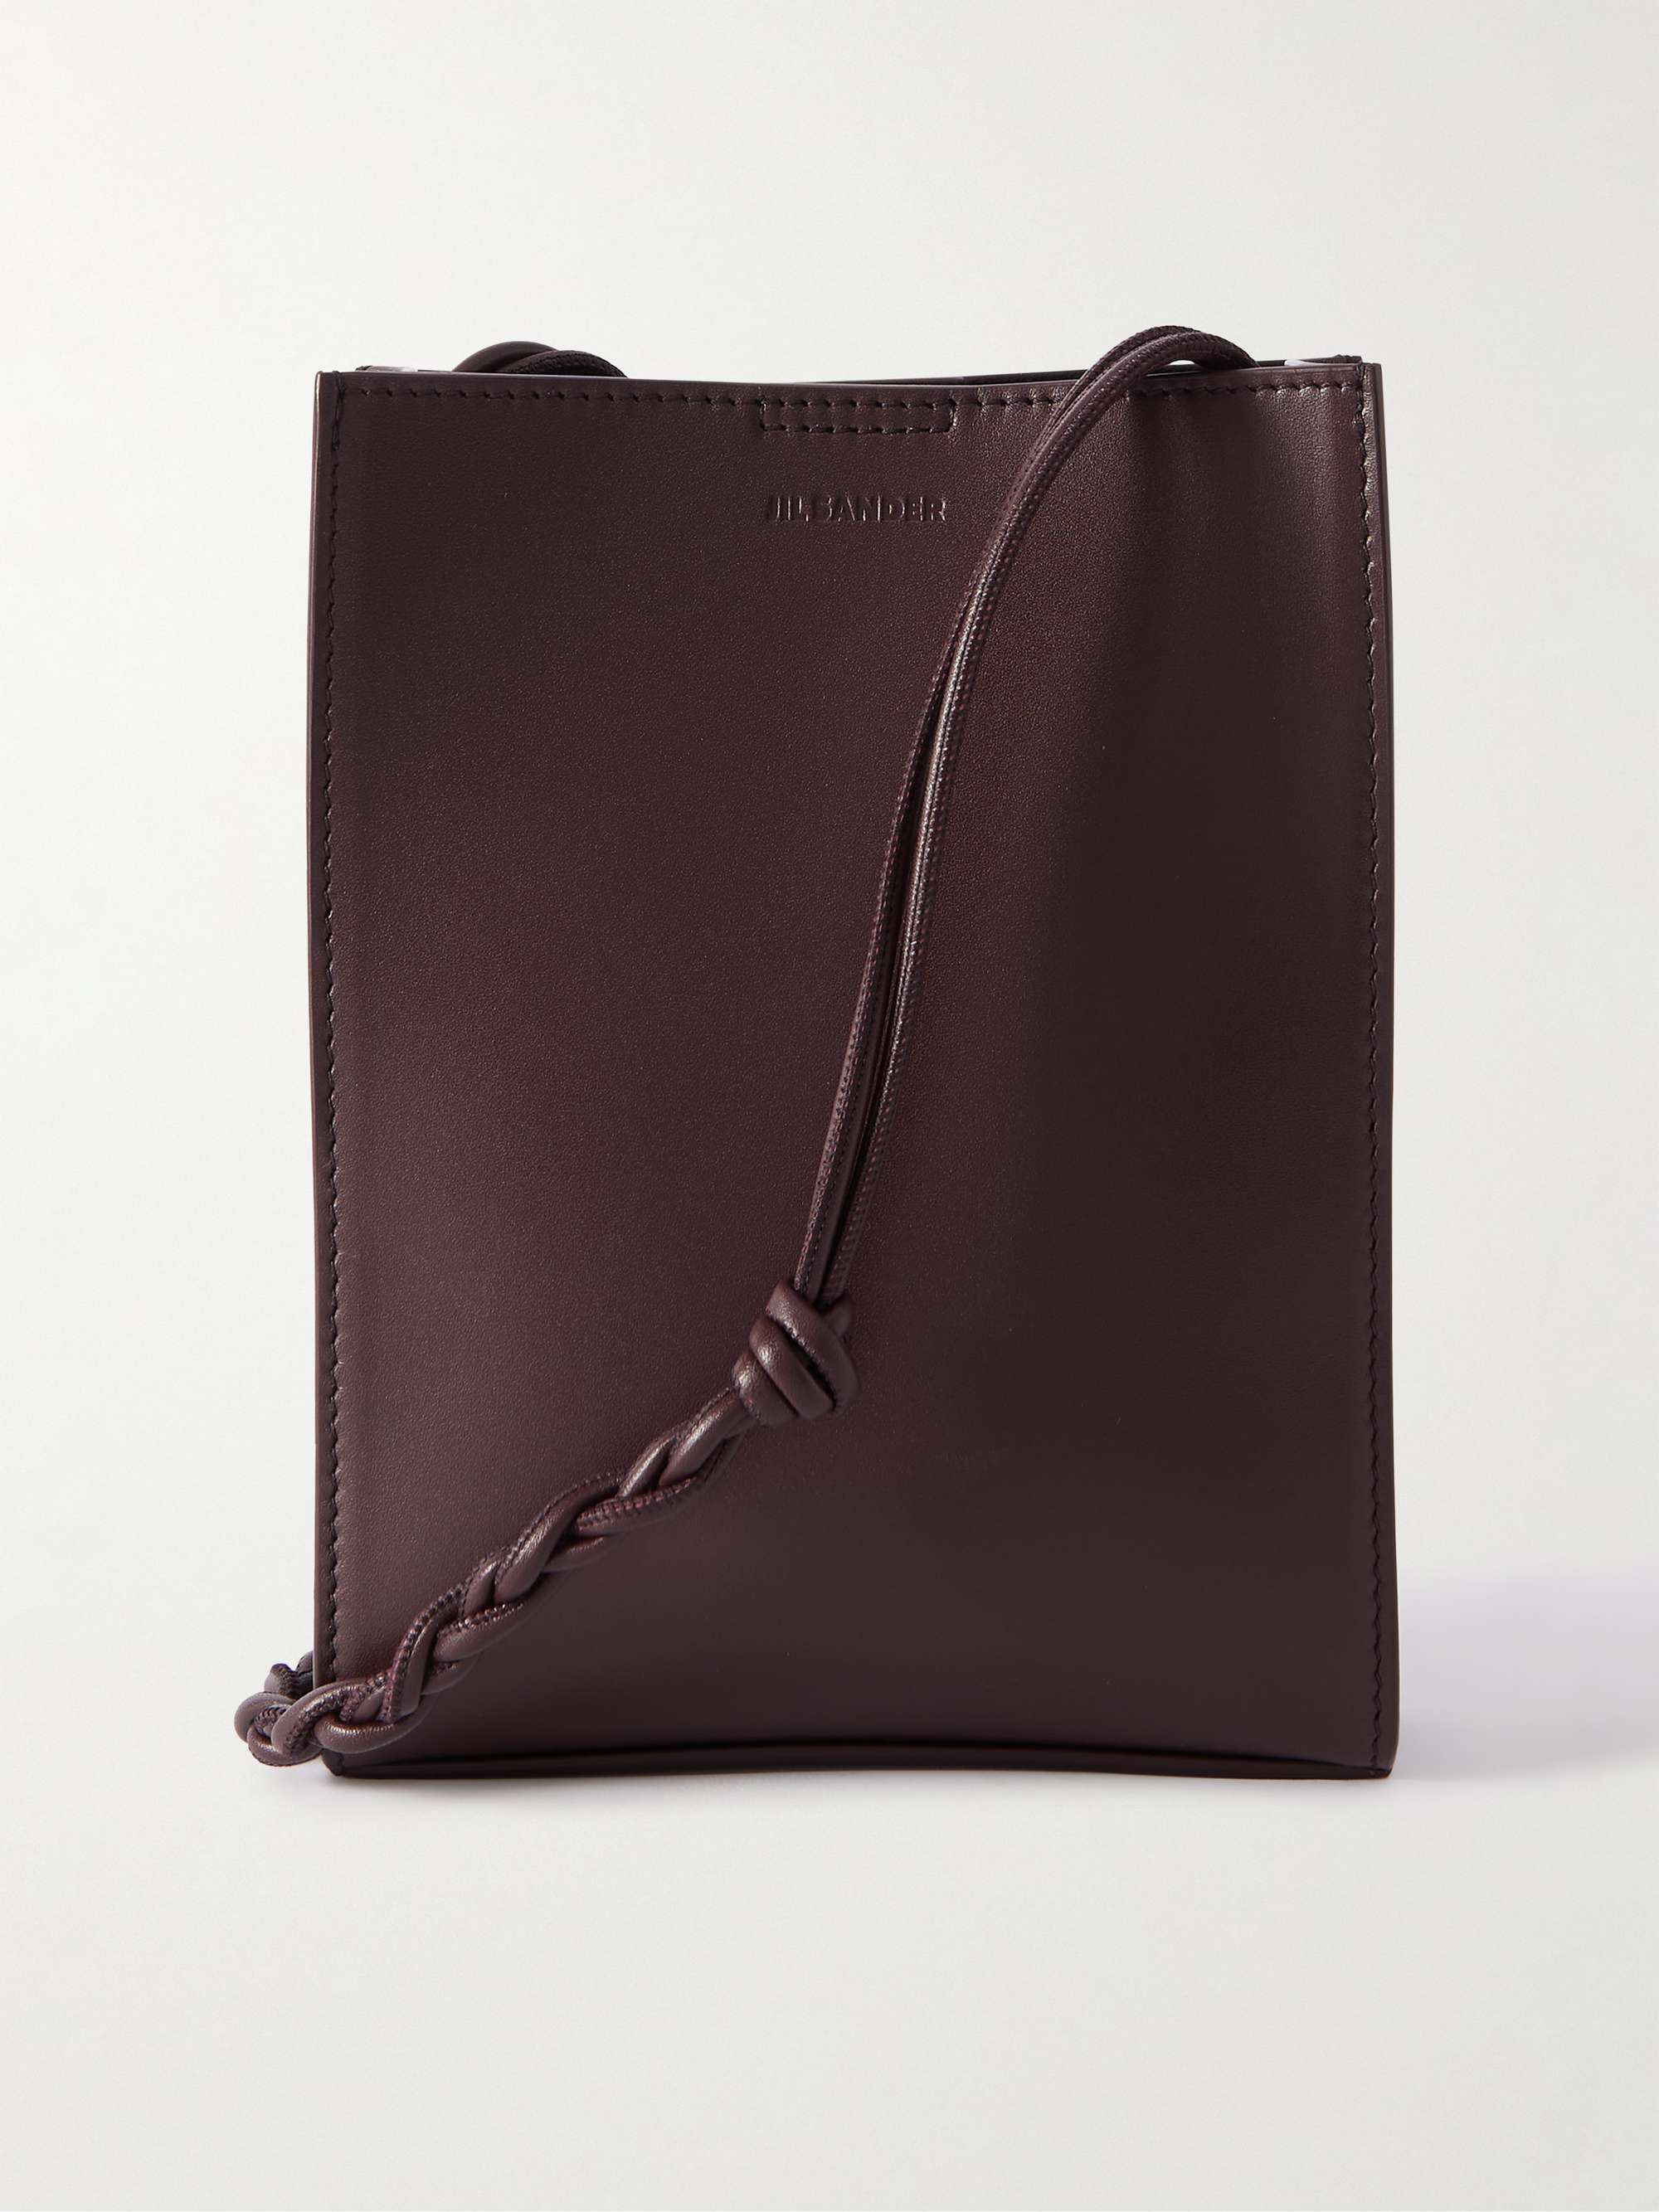 Tangle Small Leather Messenger Bag